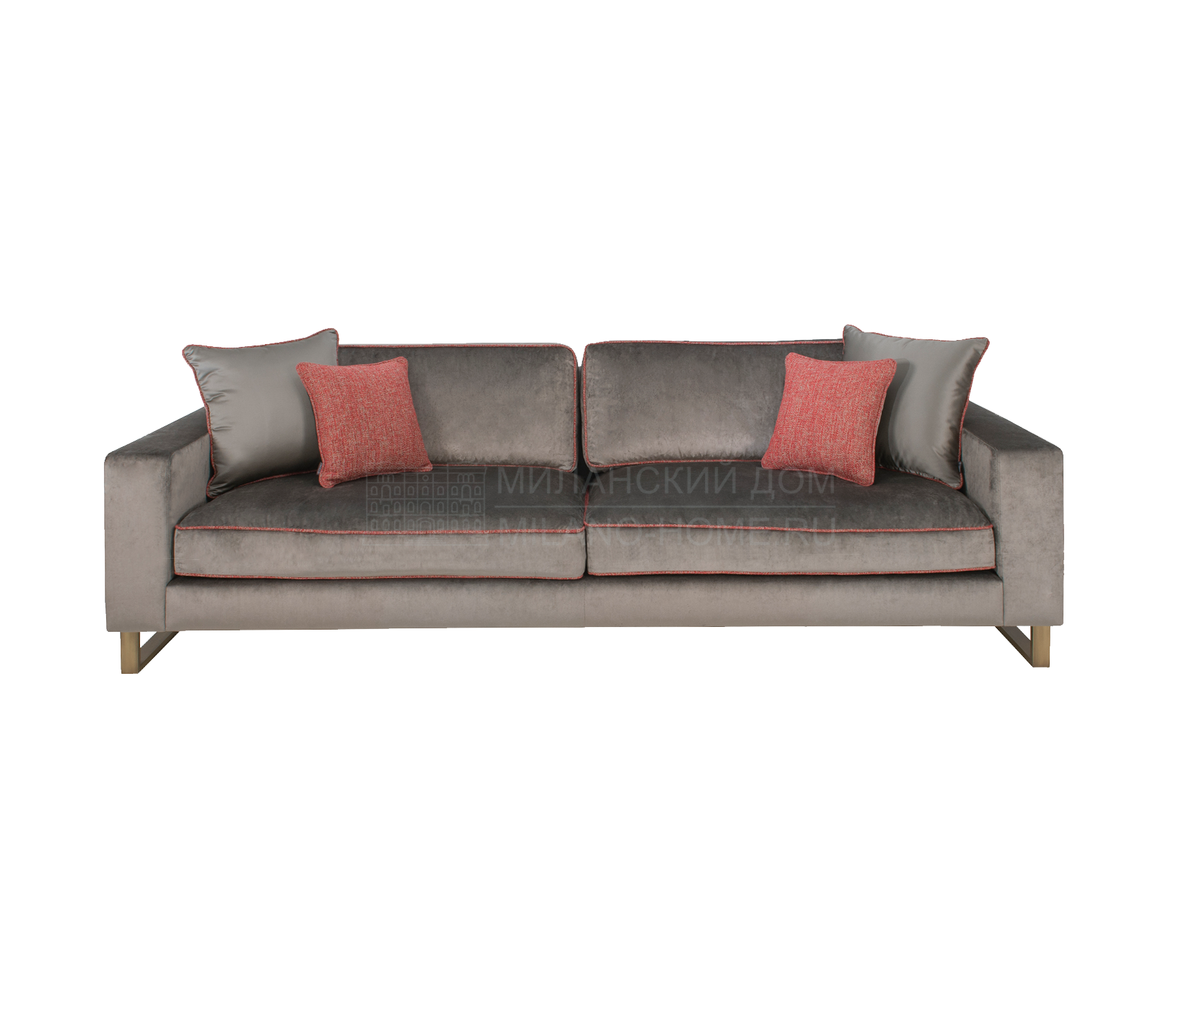 Прямой диван Tribeca sofa из Португалии фабрики FRATO